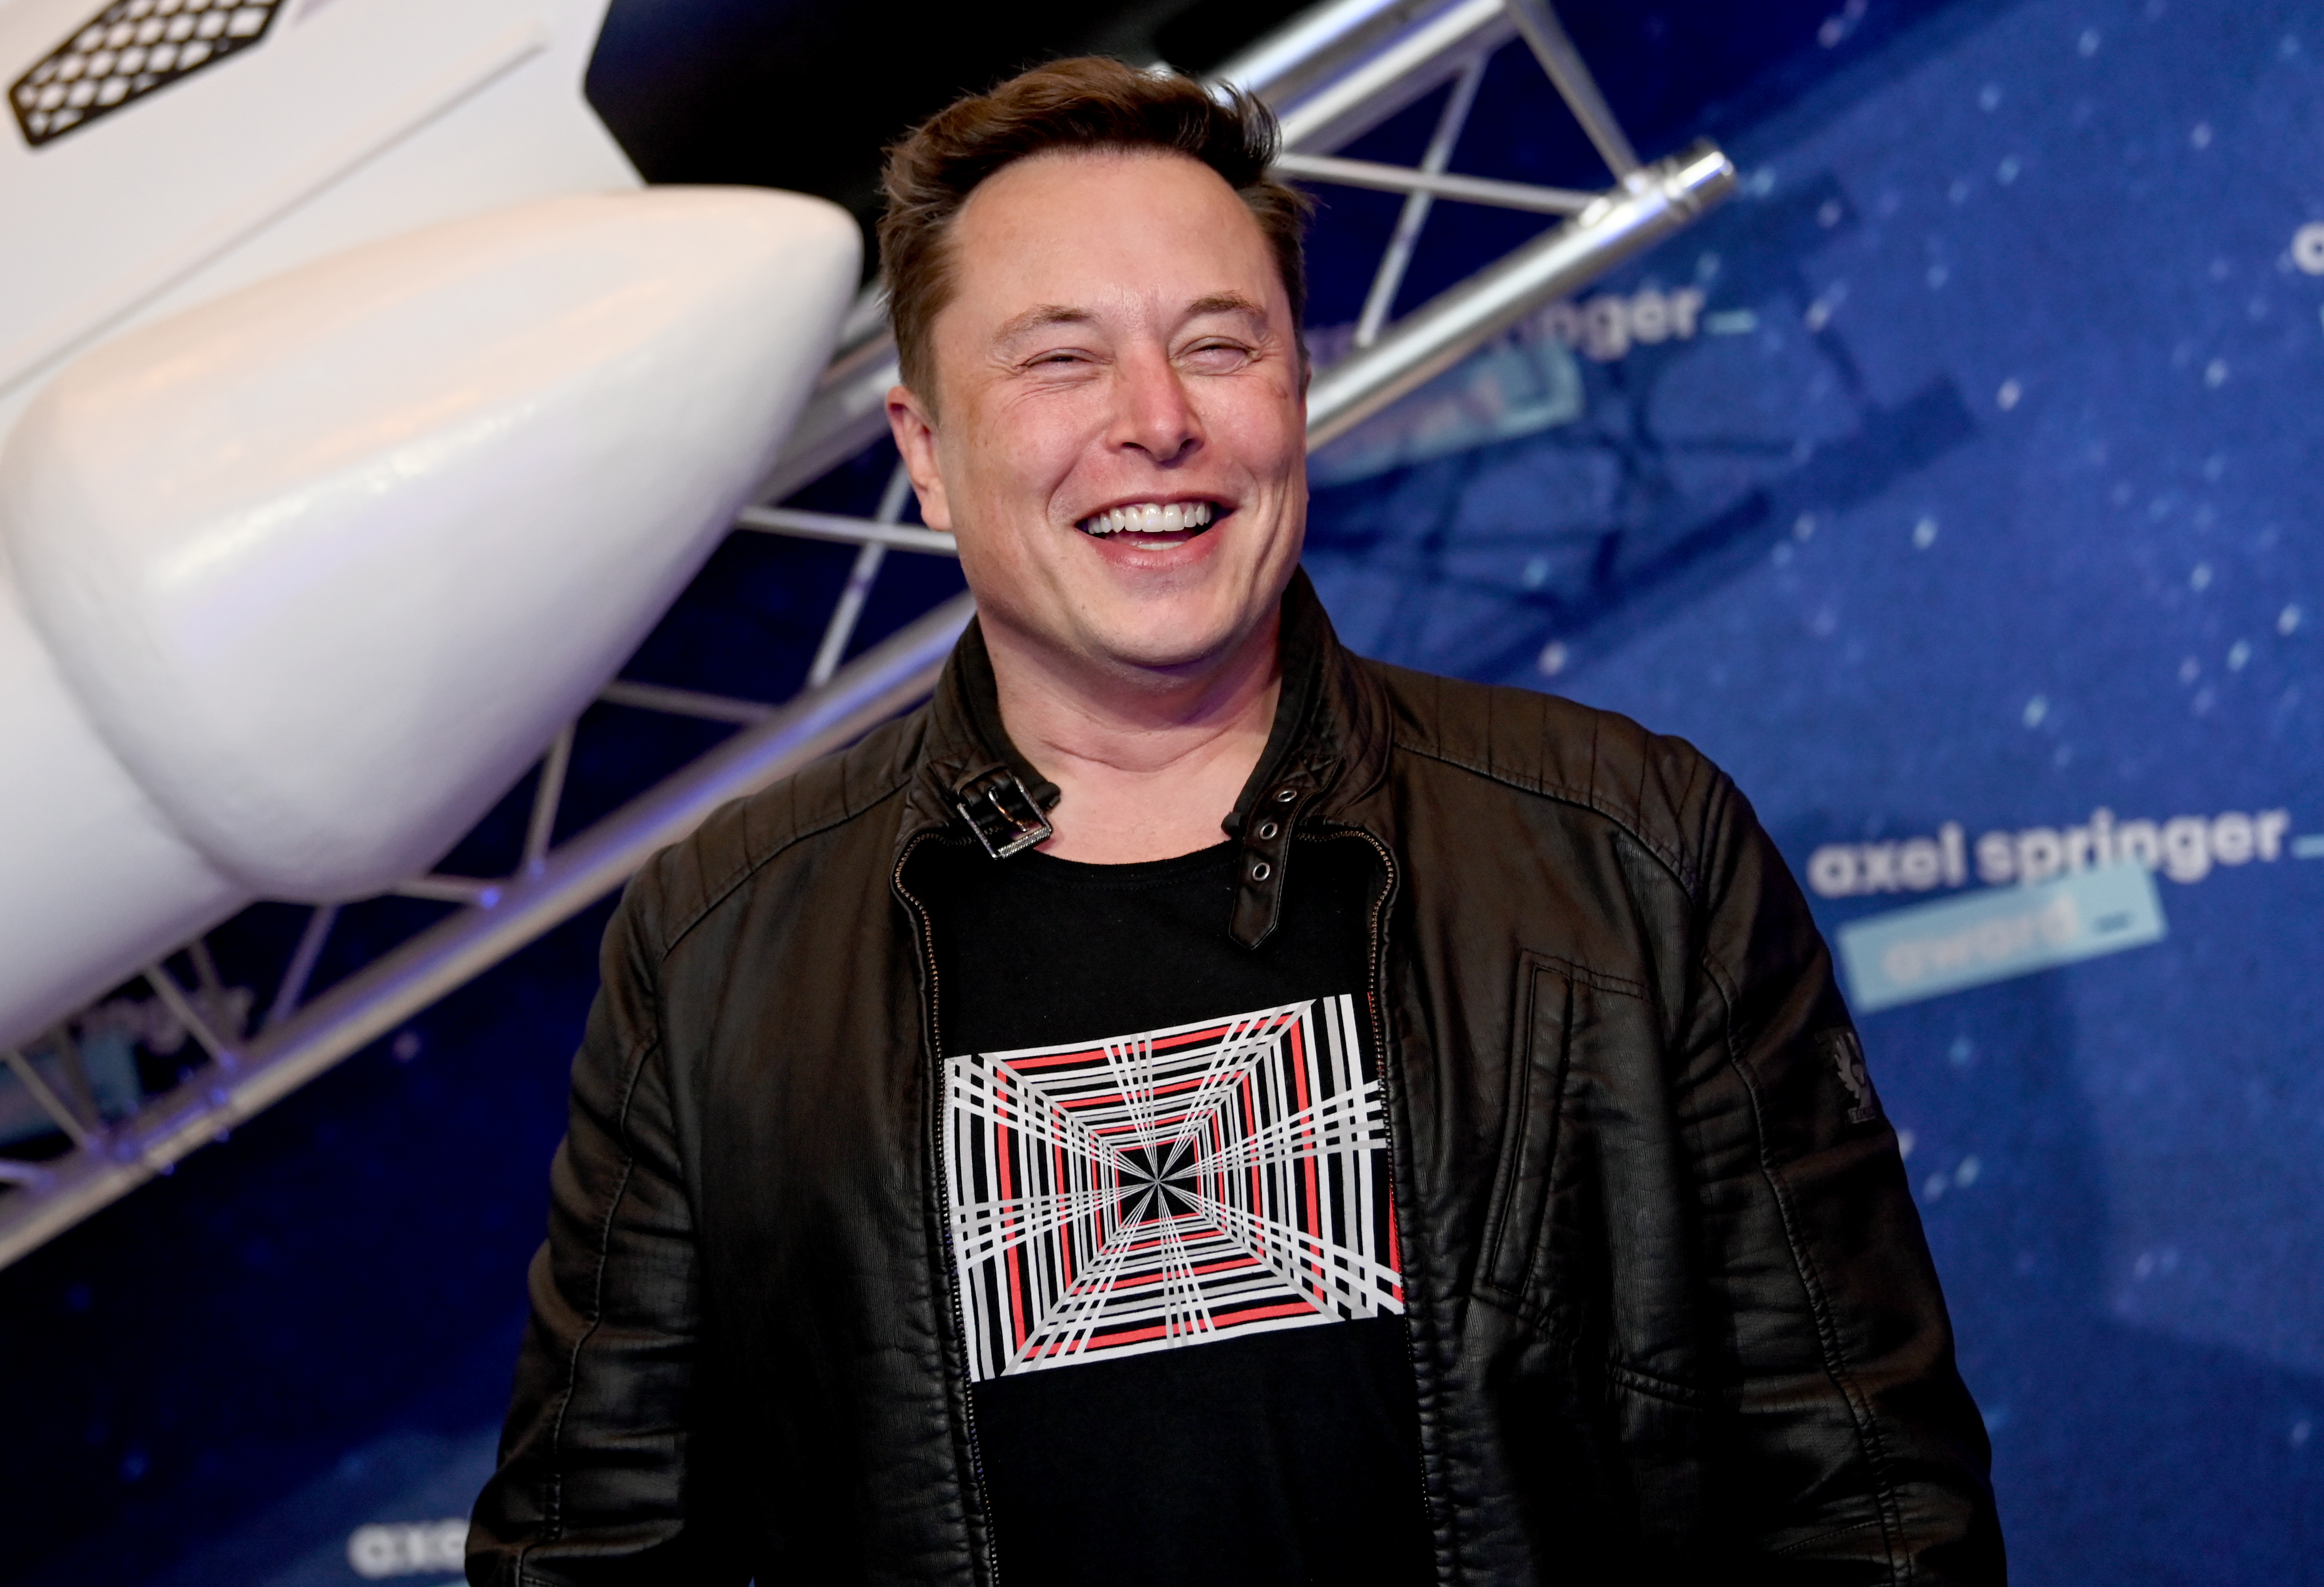 Elon Musk world's richest person